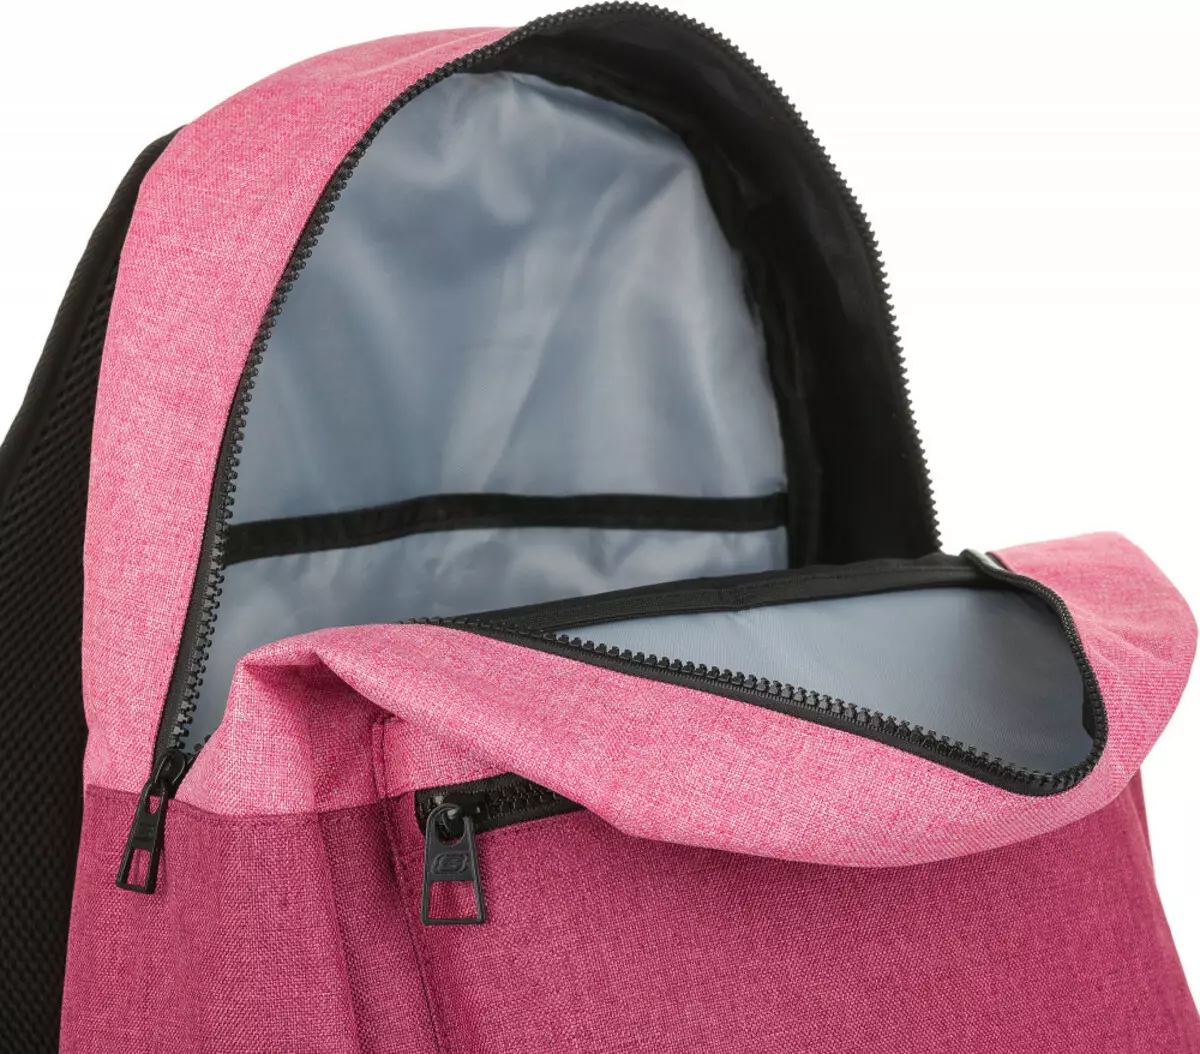 Skechers backpack: Vakadzi vatema uye vakasvibira, grey uye tsvuku, diki yebhuruu uye mamwe marudzi, ongororo 15455_16